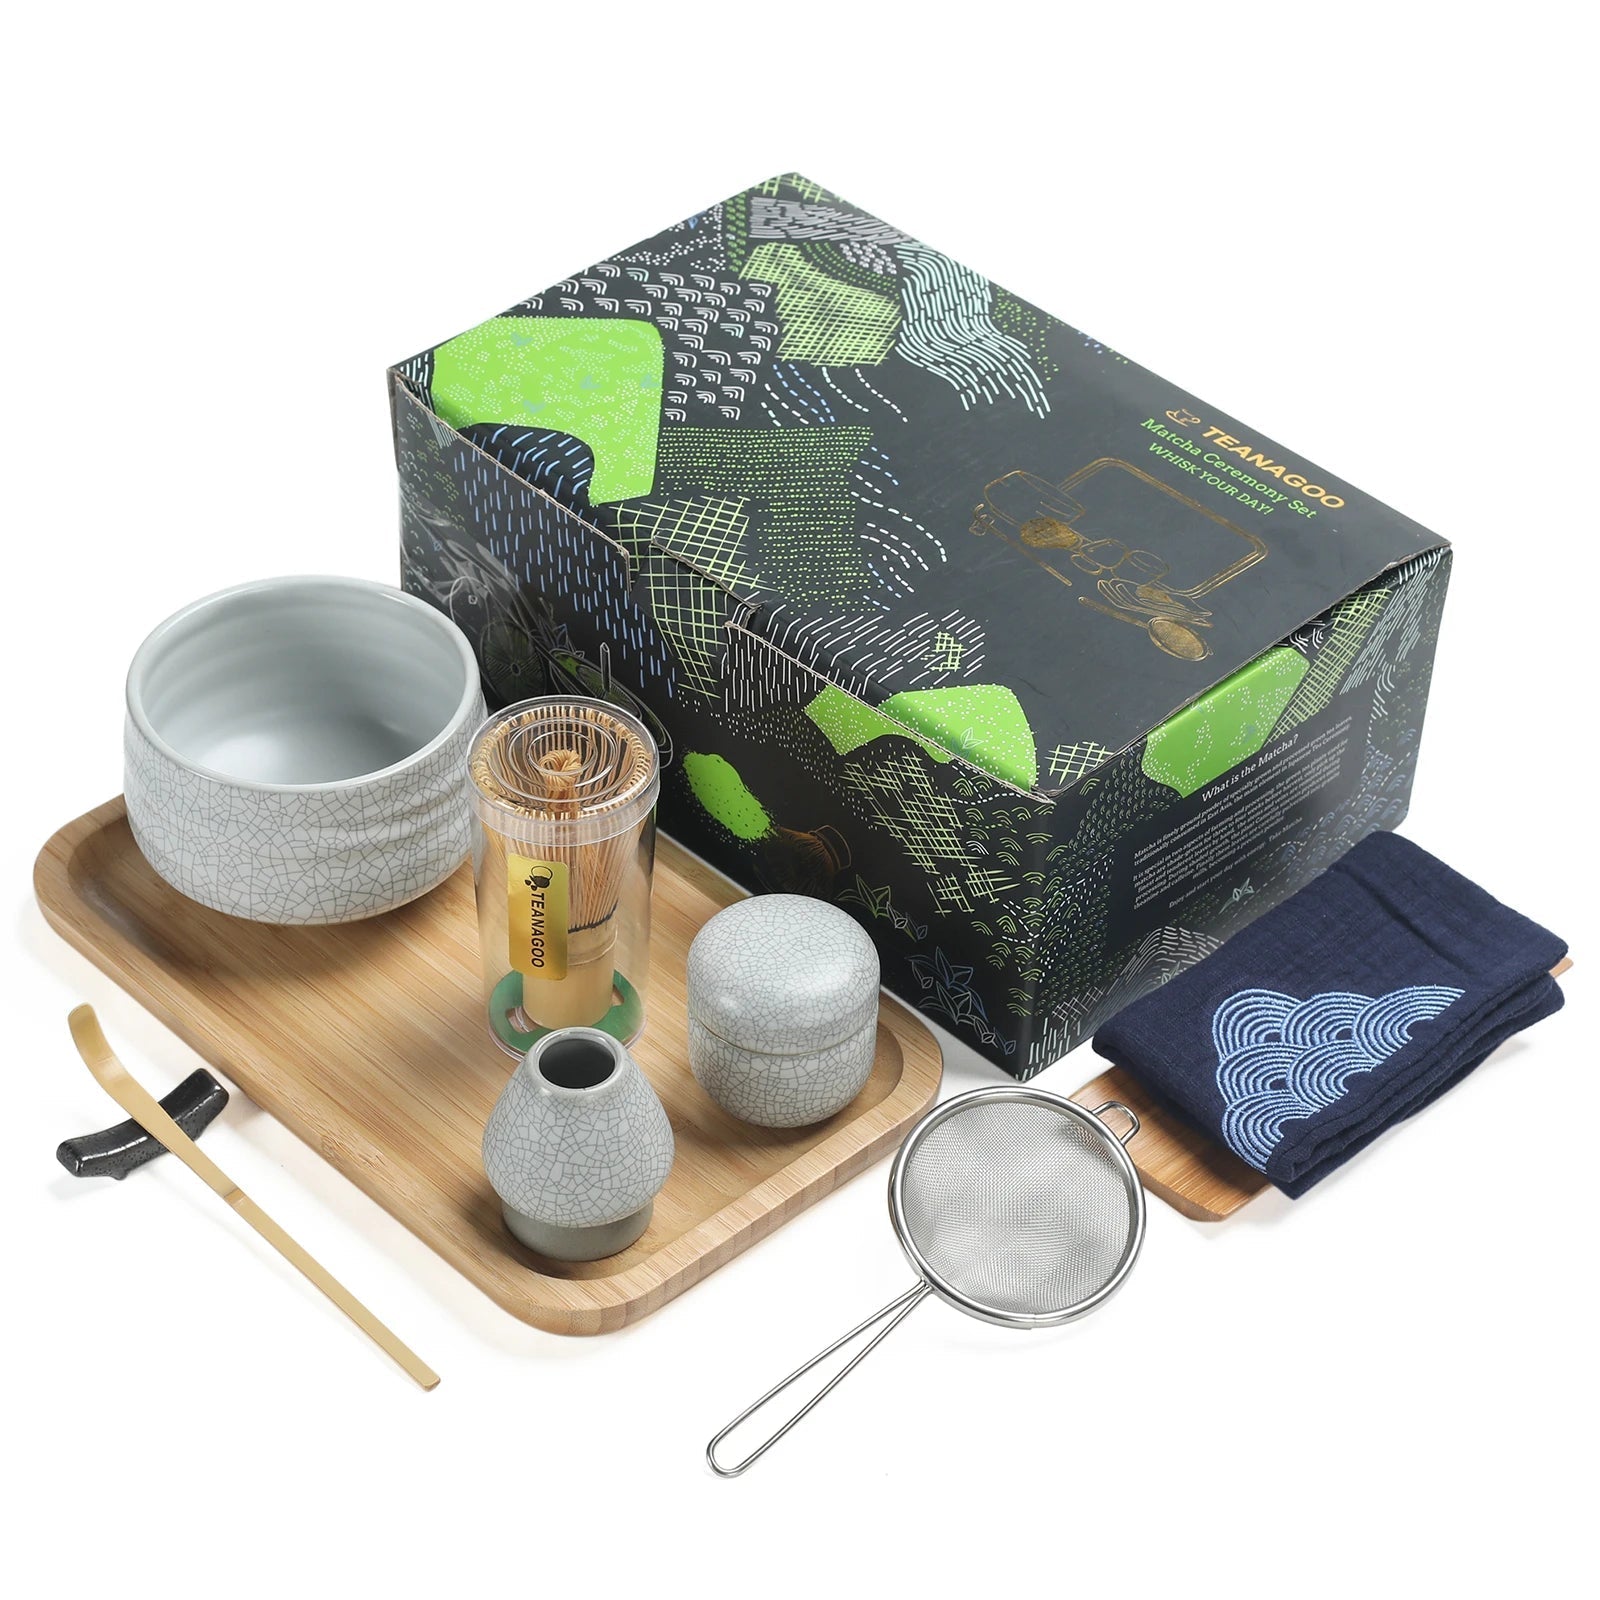 Nodate Matcha Kit by Sugimoto - The Tea Lab